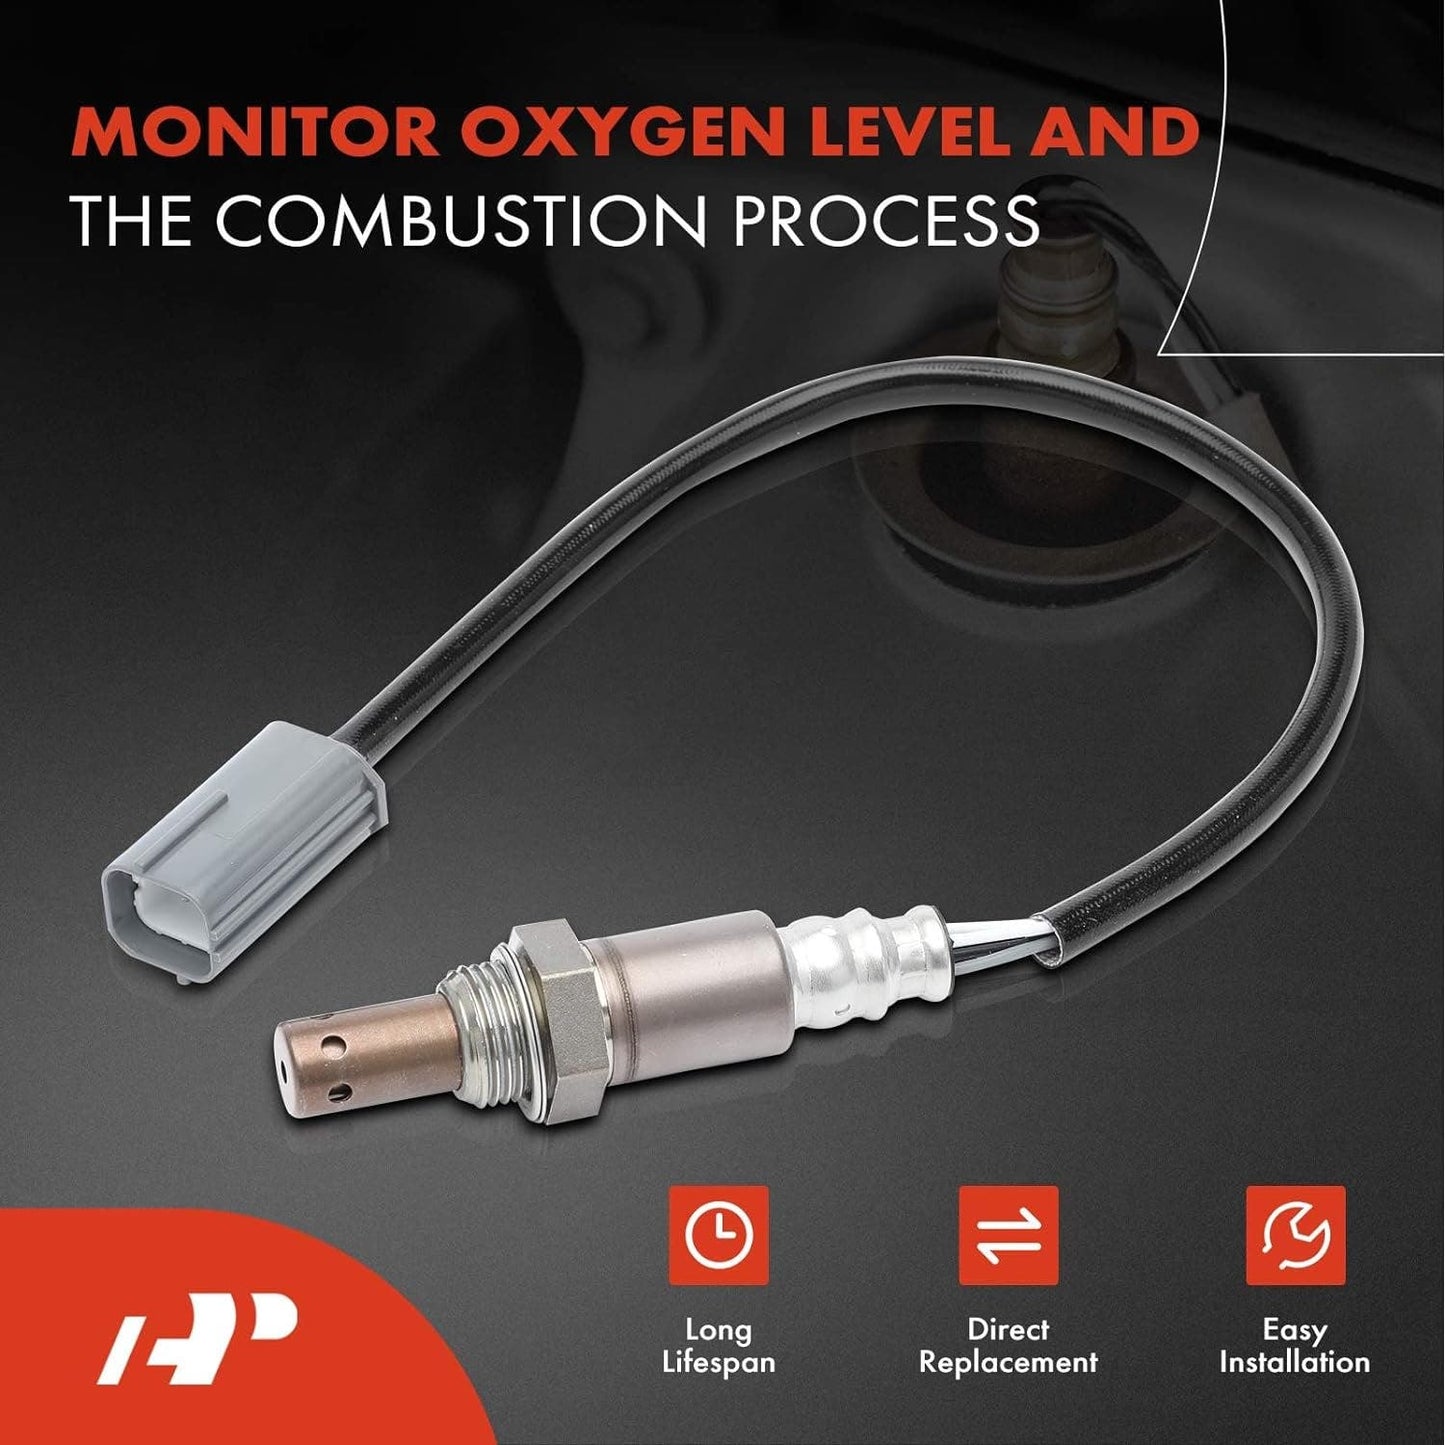 A-Premium O2 Oxygen Sensor fits Altima, Frontier, Maxima, Rogue, Sentra & More